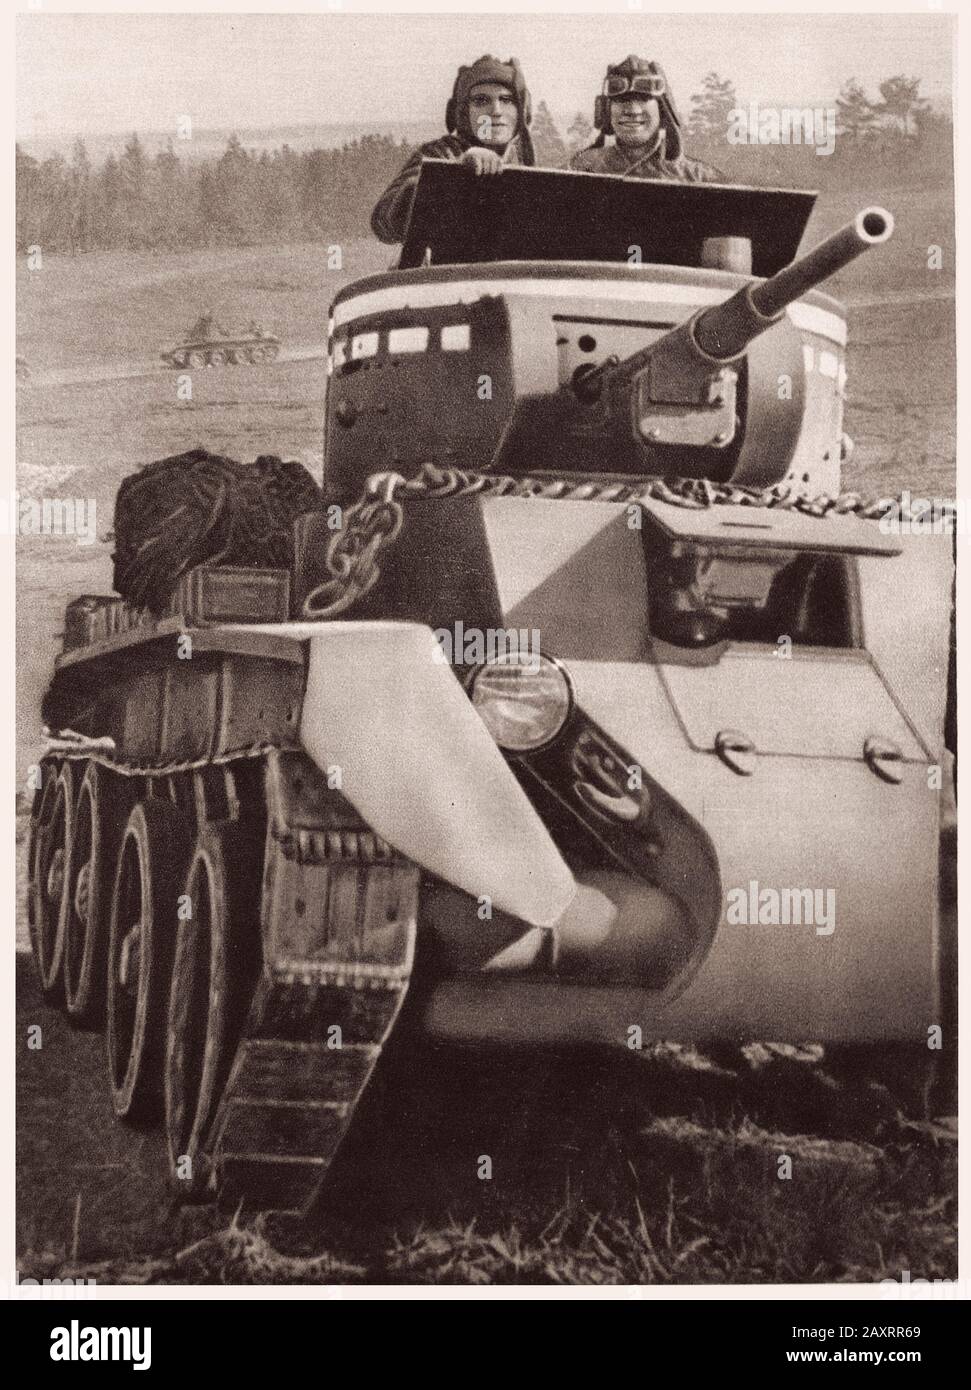 Esercito Rosso. Dal libro di propaganda sovietico del 1937. Equipaggio di carri armati sovietici Foto Stock